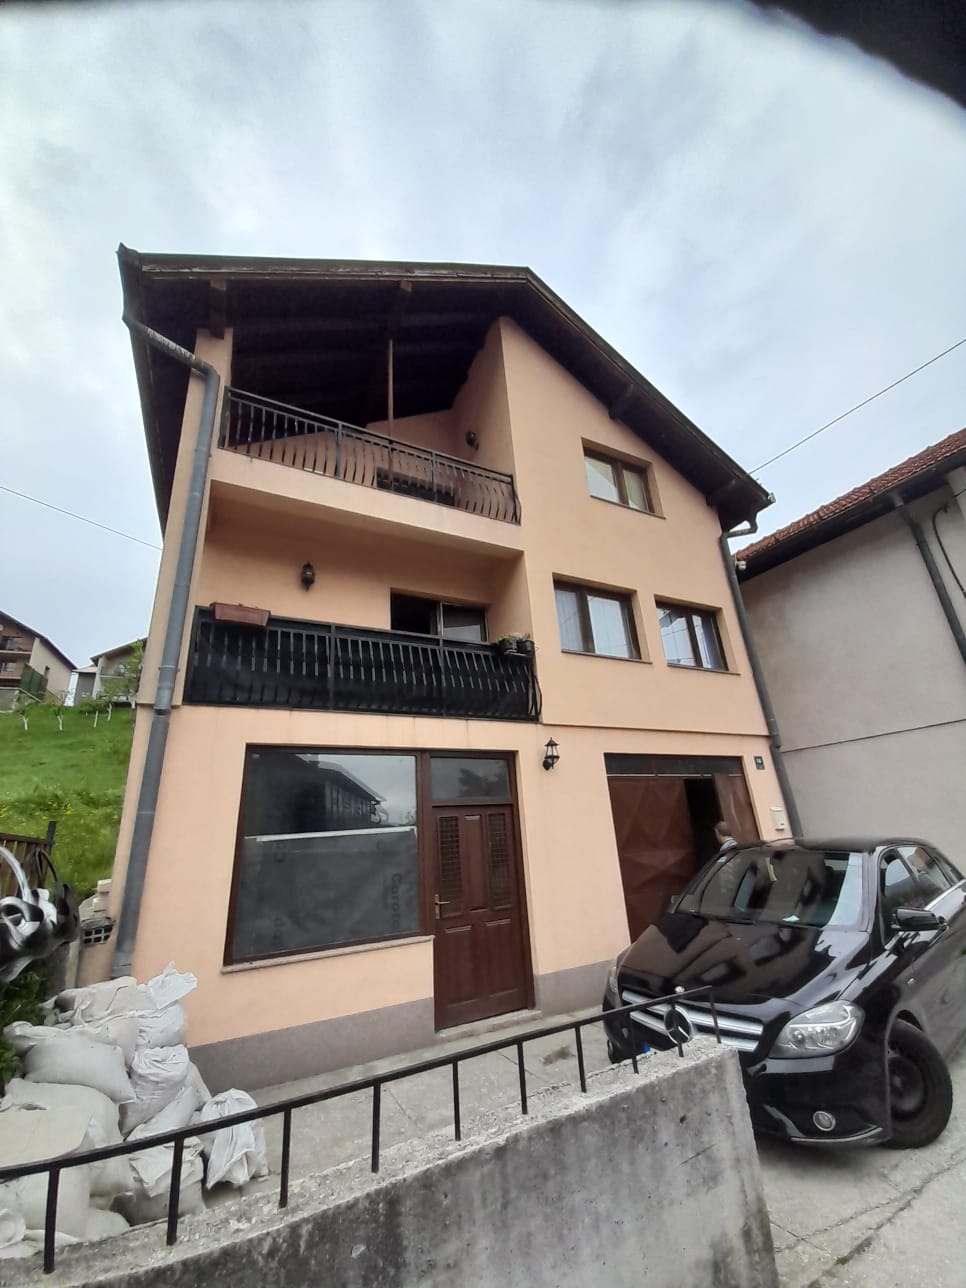 Agencija za nekretnine Platinum STAR izdvaja iz svoje ponude prodaju kuće i okućnice u opštini Stari Grad, Sarajevo, ulica Lipe.